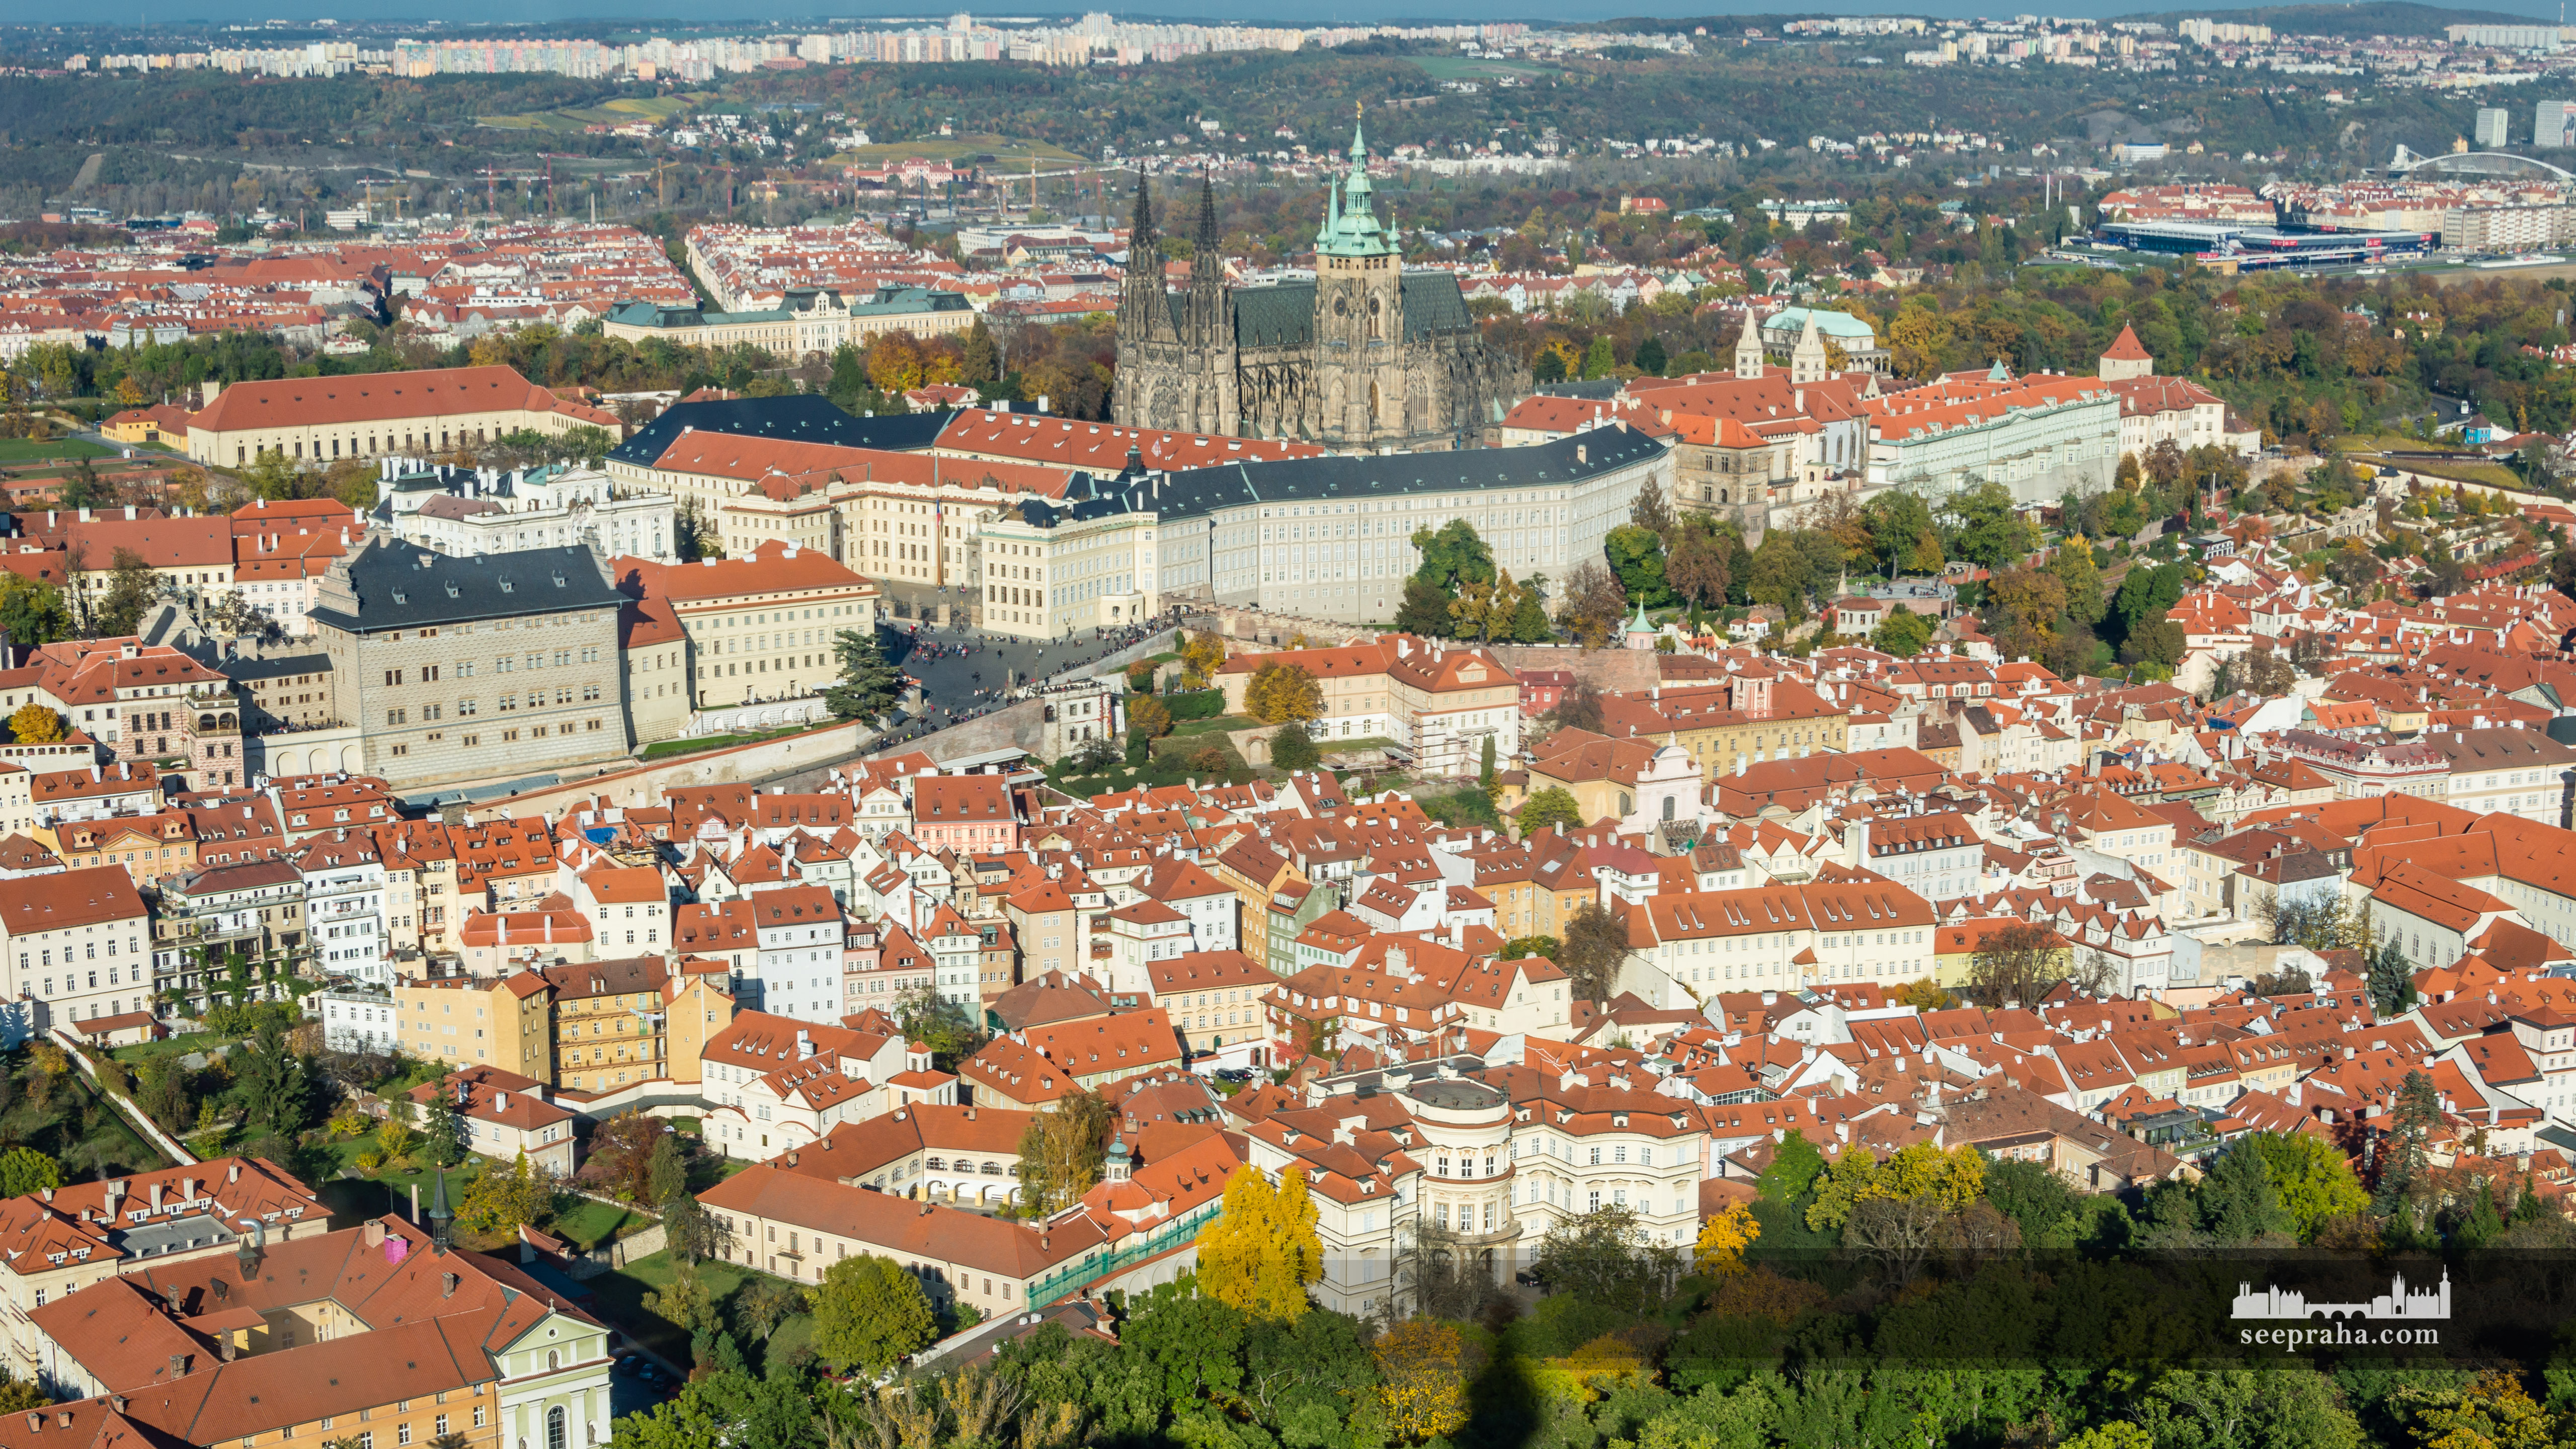 Widok Zamku na Hradczanach z wieży na wzgórzu Petřín, Praga, Czechy